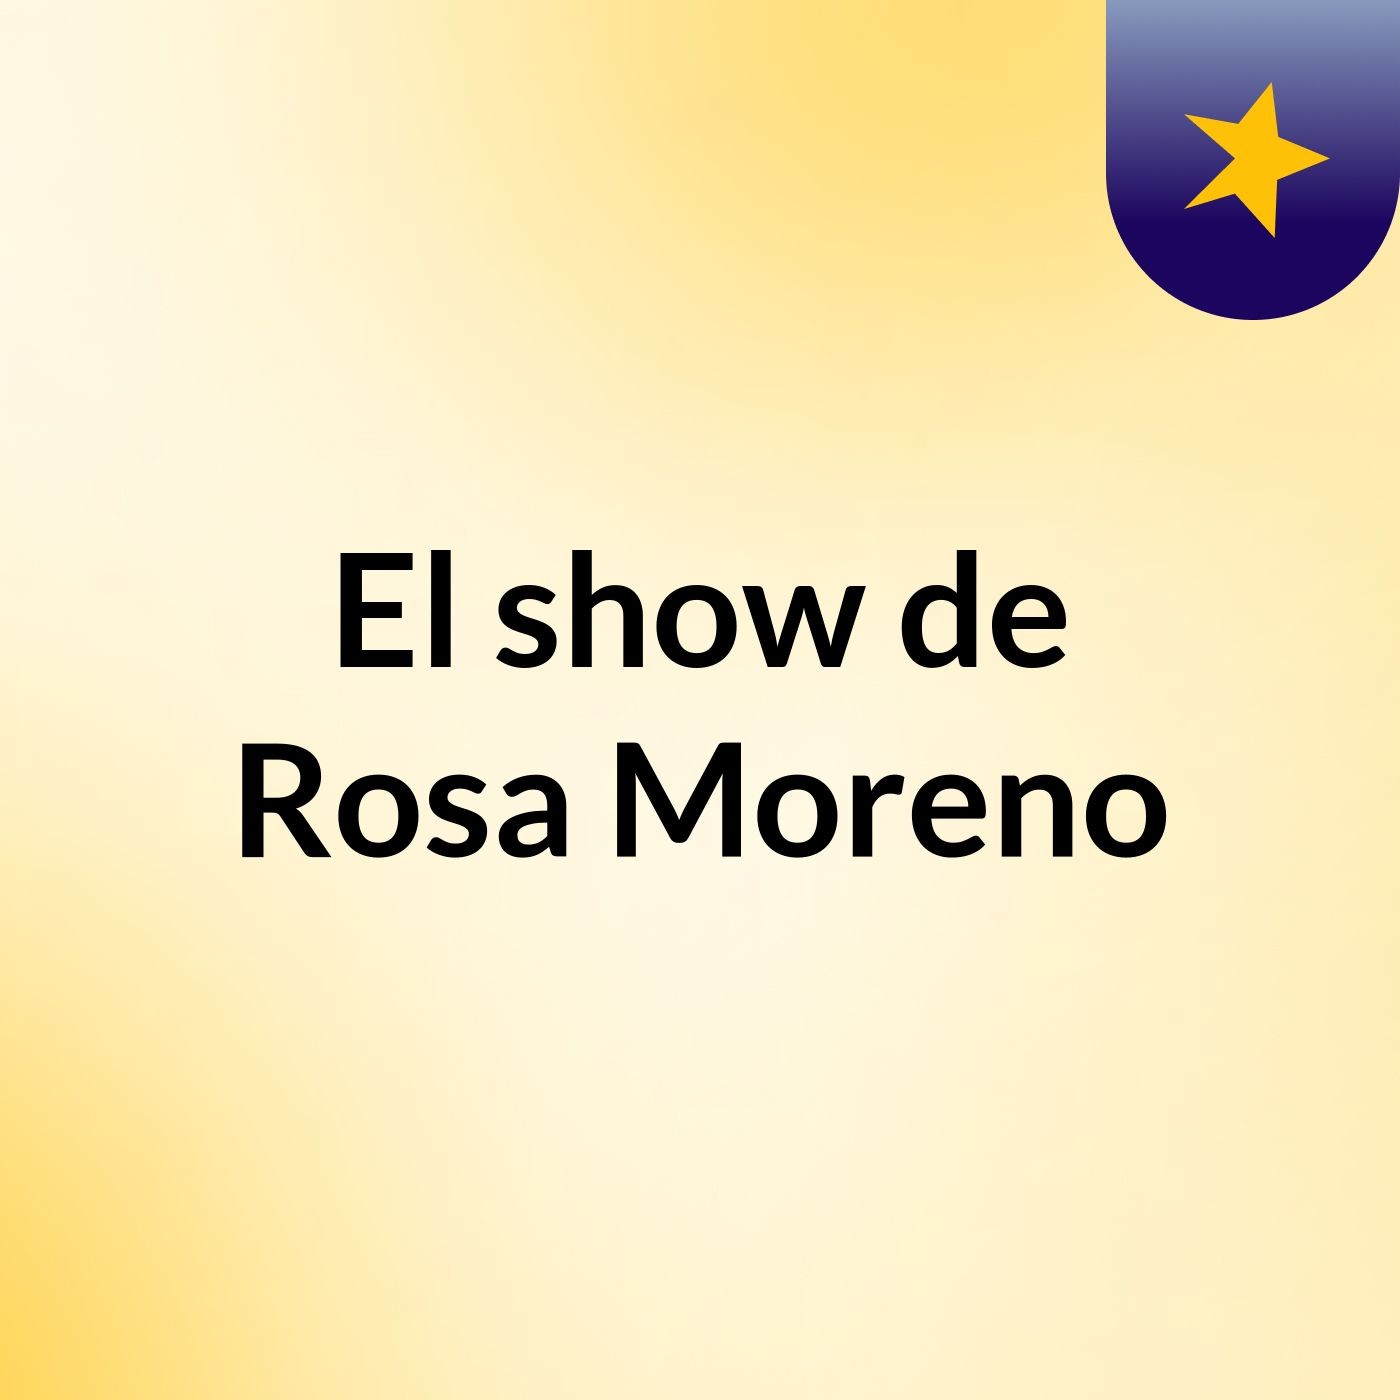 Episodio 3 - El show de Rosa Moreno